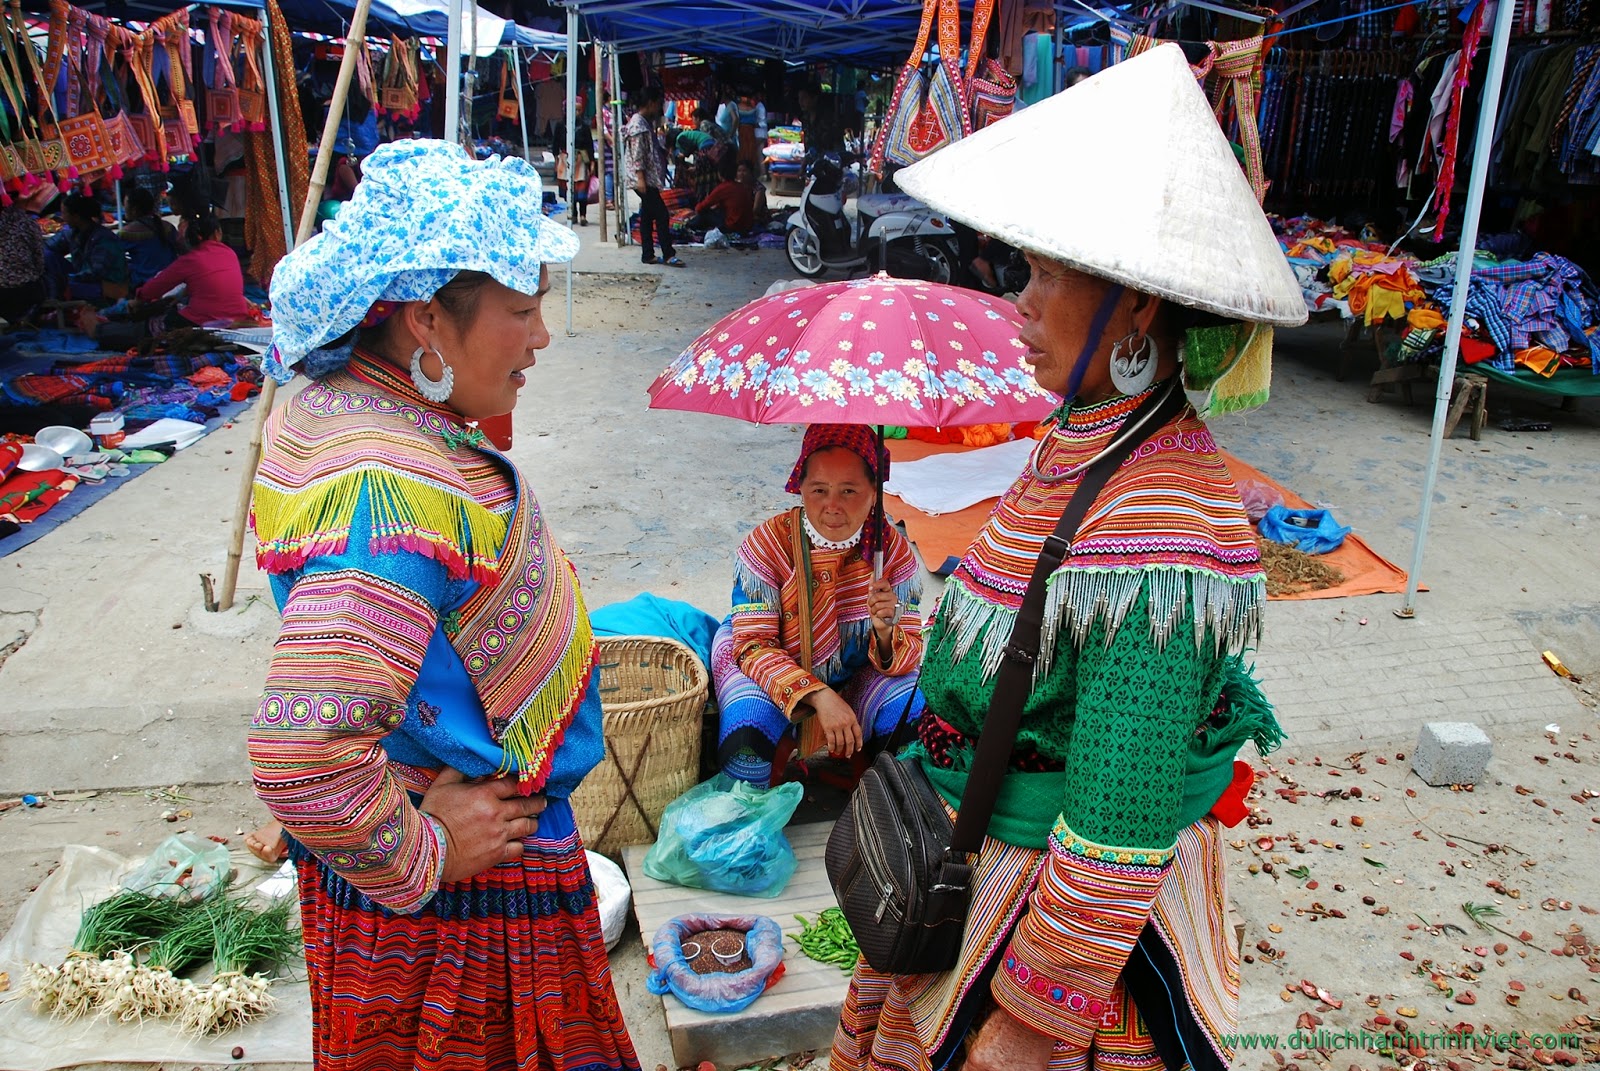 Du lịch tham quan chợ phiên Bắc Hà, Lào Cai